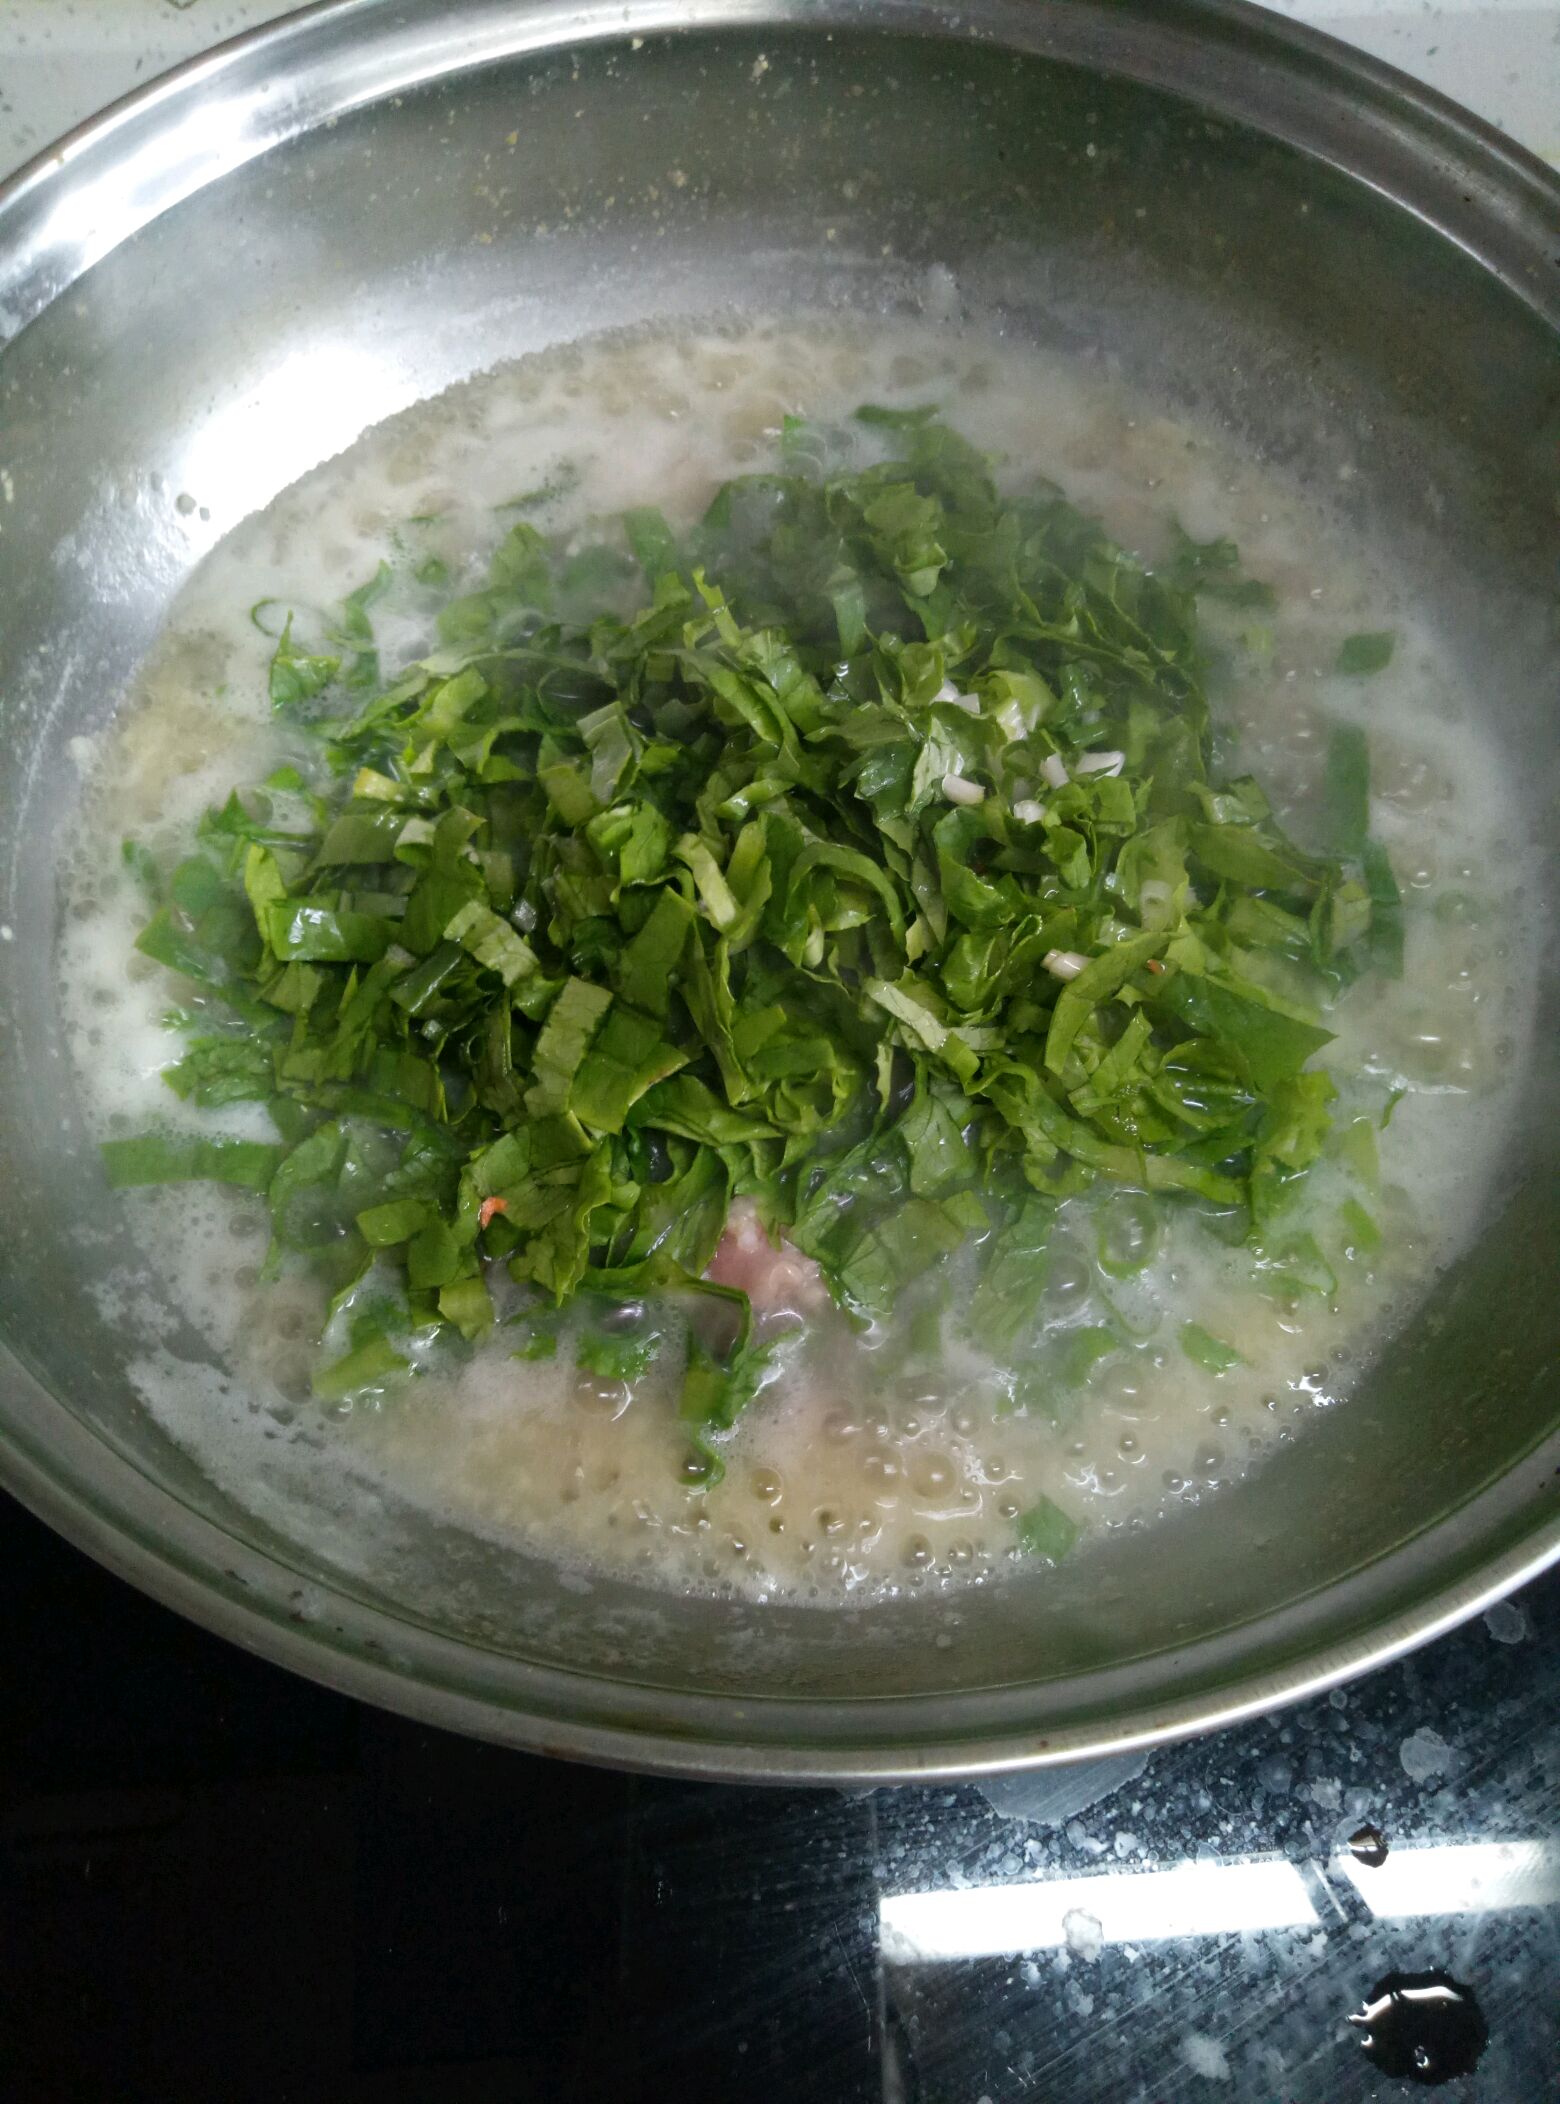 砂锅蔬菜粥怎么做_砂锅蔬菜粥的做法_妞妞妈美食_豆果美食